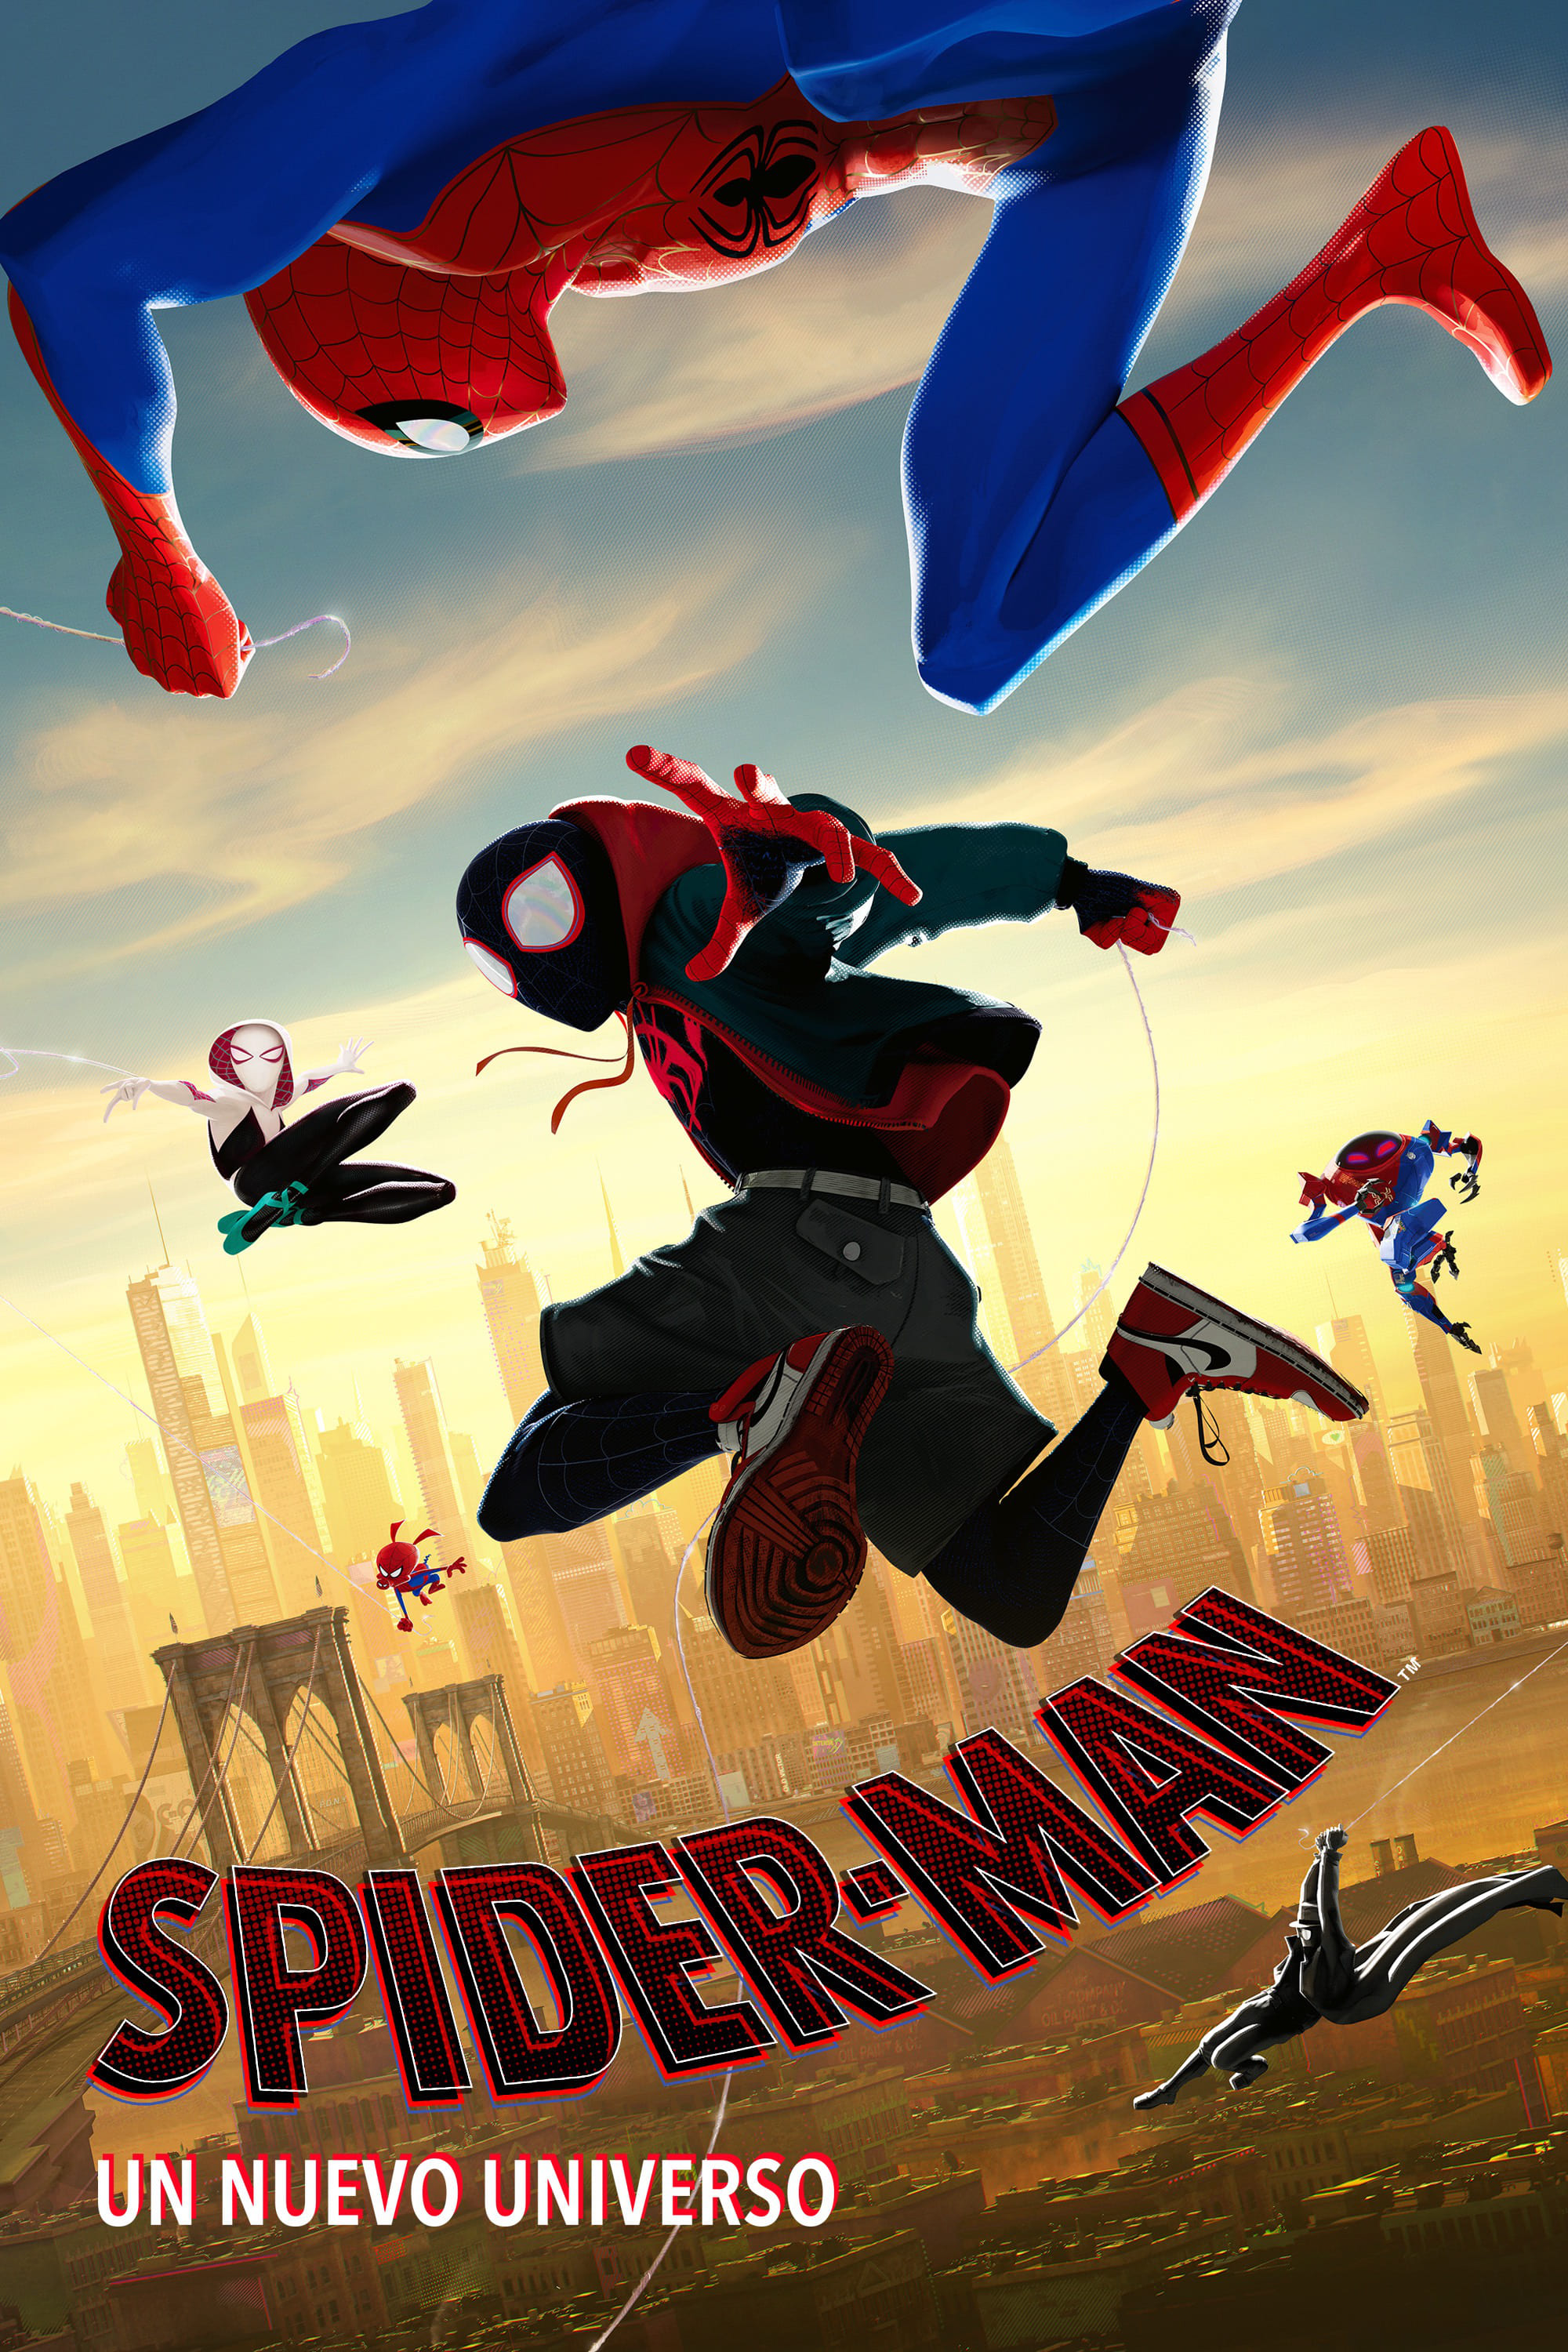 Ver Spider-Man: Un nuevo universo pelicula completa Español Latino , English Sub - cuevana3